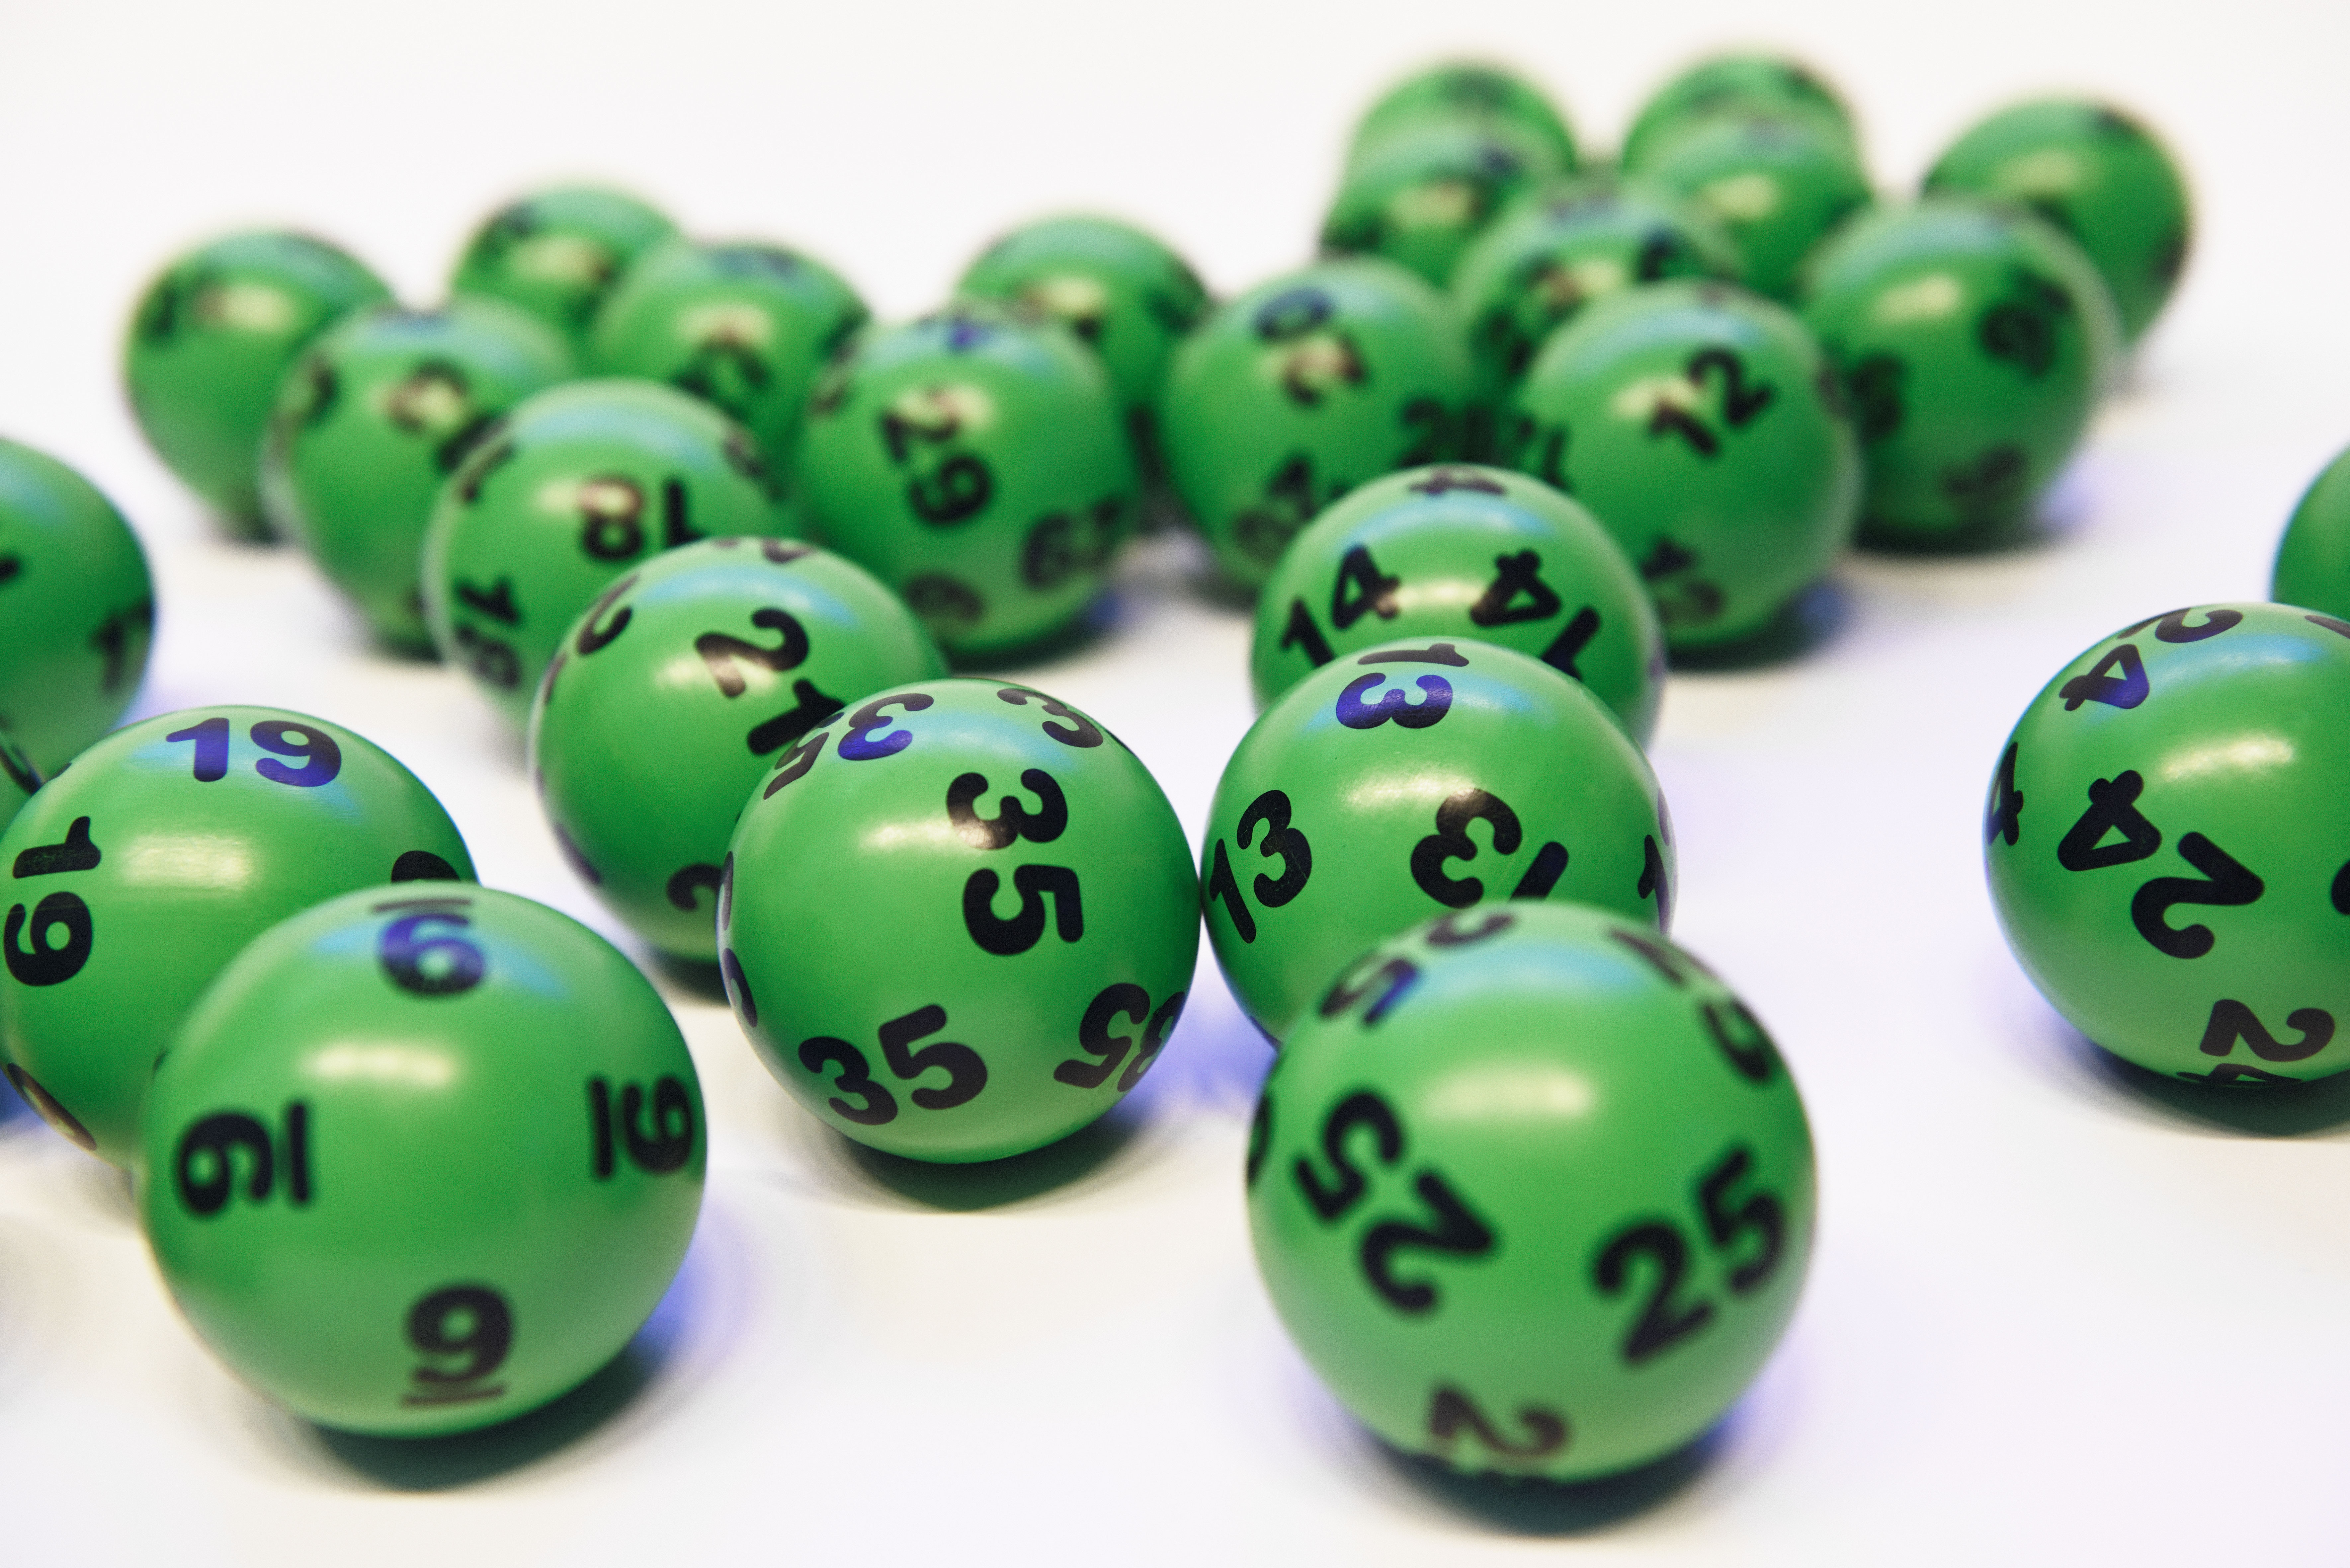 Lotto Statistik 2019 PlayMillion - 95061